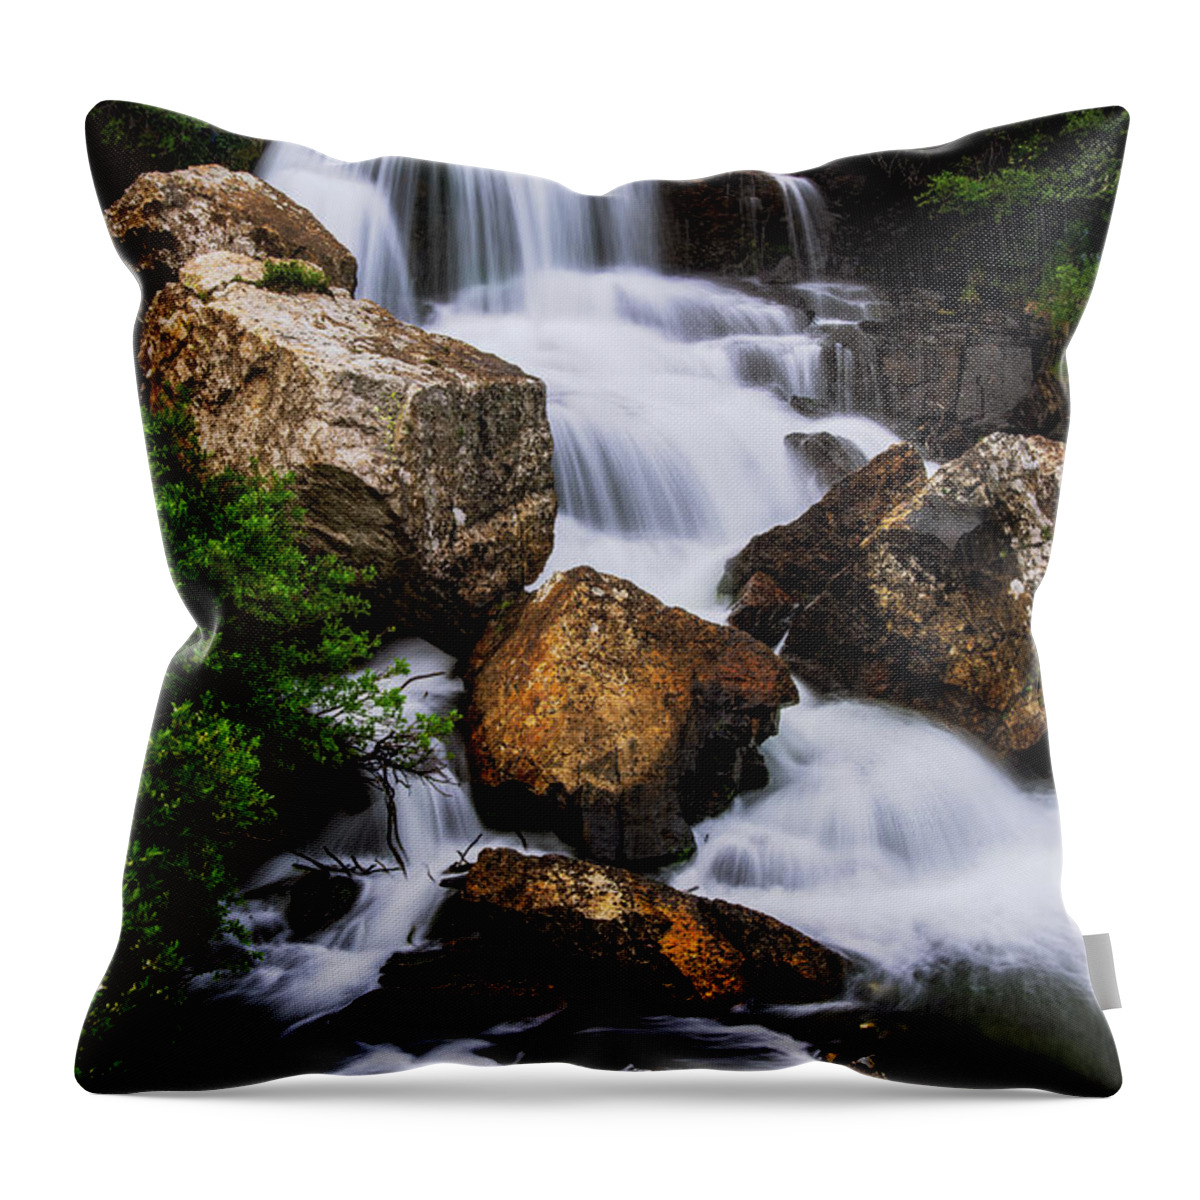 Monte Cristo Creek Falls Throw Pillow featuring the photograph Monte Cristo Creek Falls by Bitter Buffalo Photography